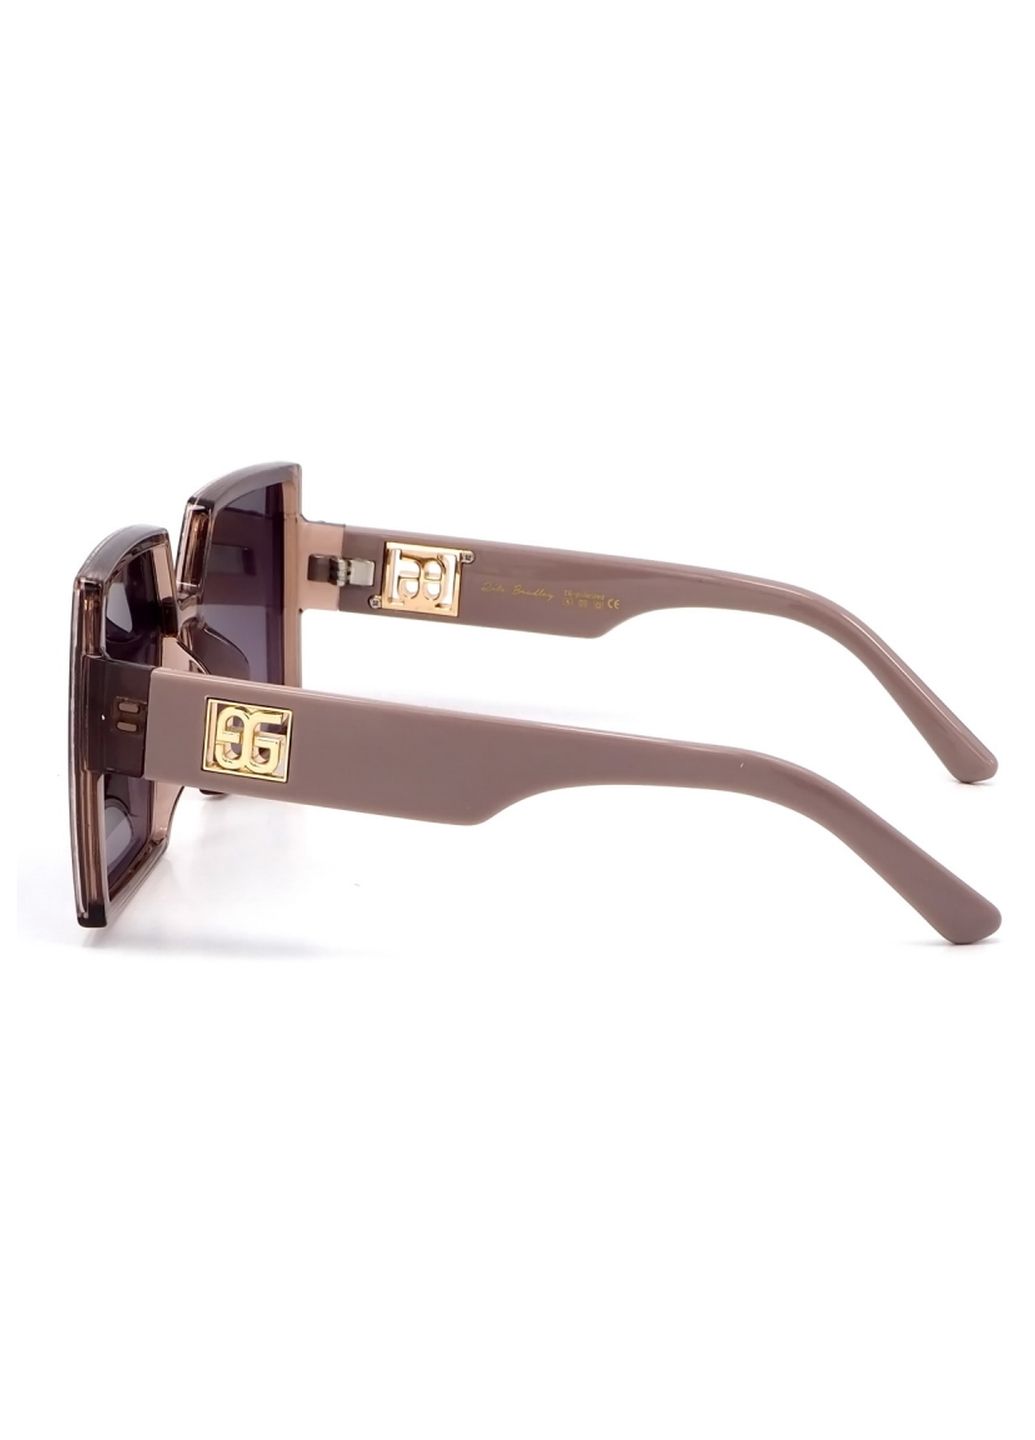 Купить Женские солнцезащитные очки Rita Bradley с поляризацией RB731 112081 в интернет-магазине